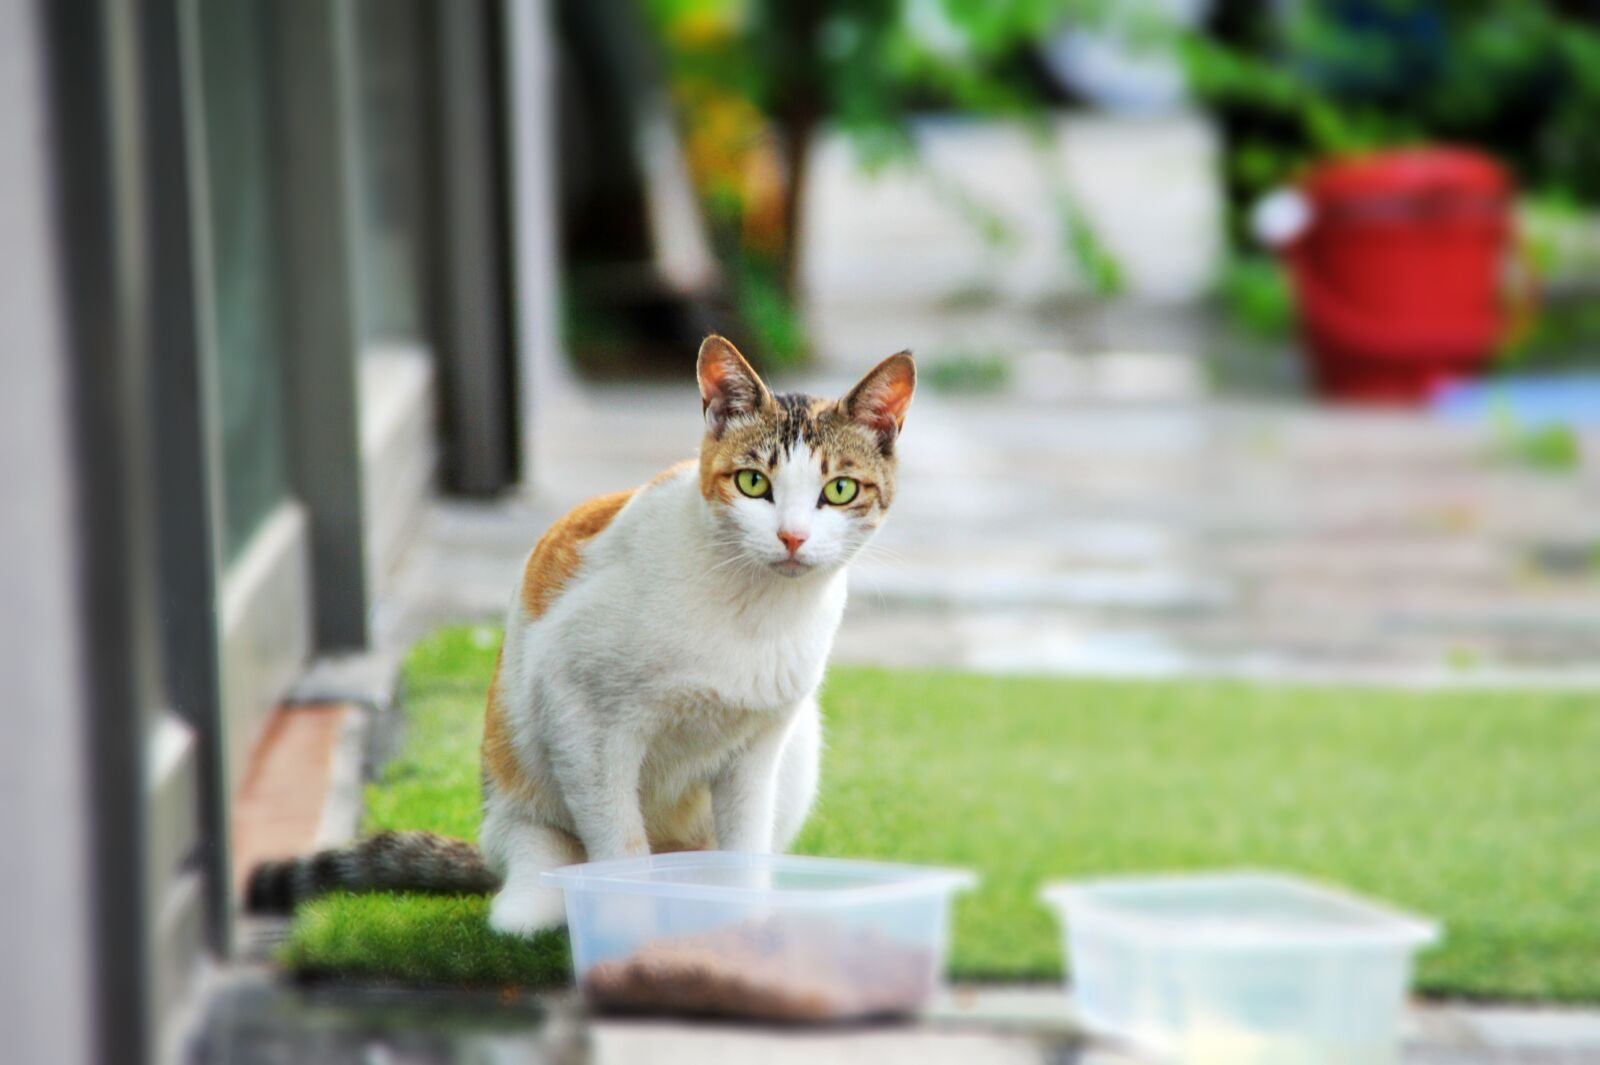 Nikon D700 sample photo. Cat, street cat, gilnyangyi photography